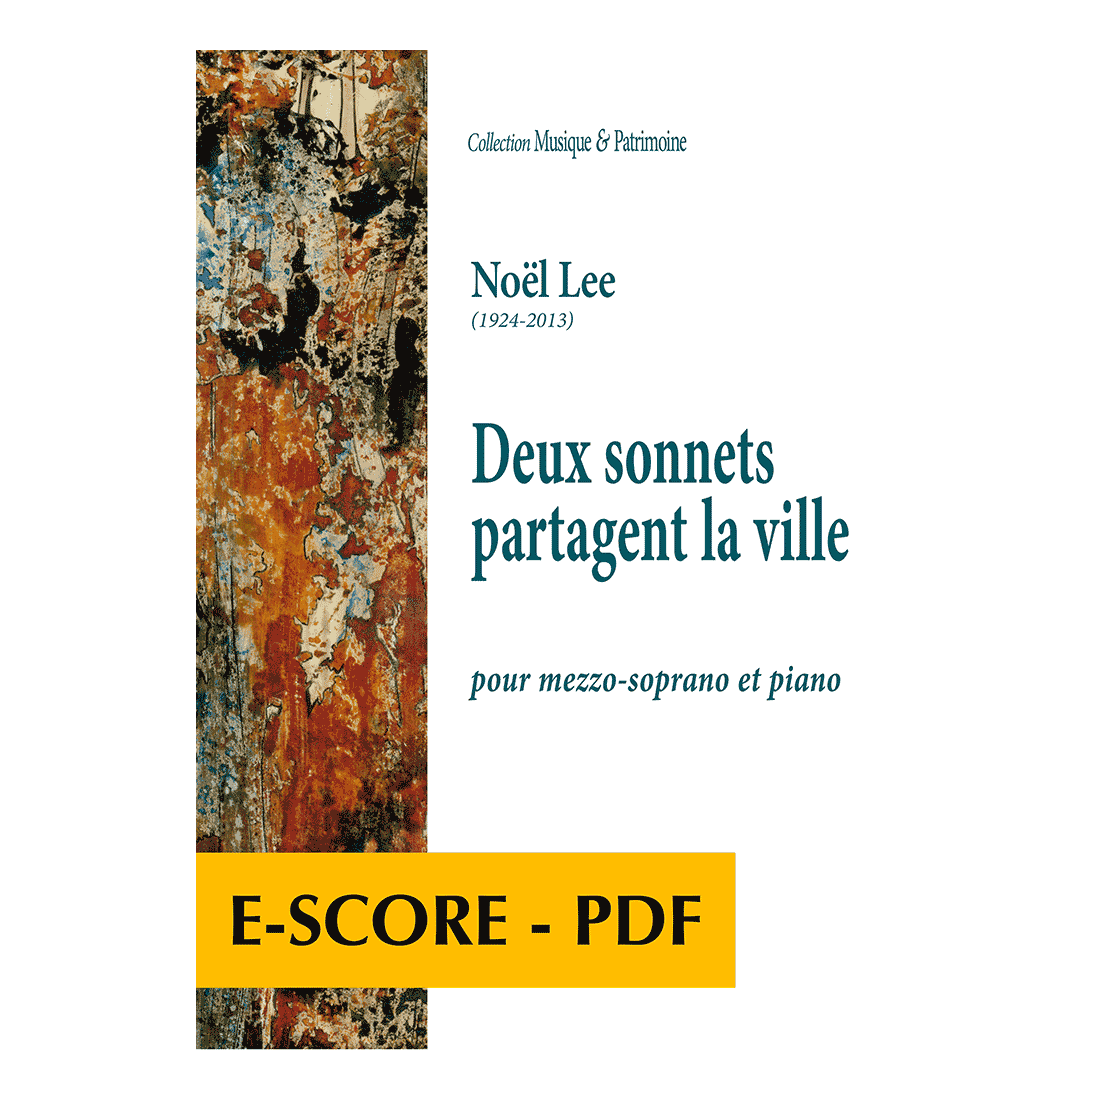 Deux sonnets partagent la ville pour mezzo-soprano et piano - E-score PDF